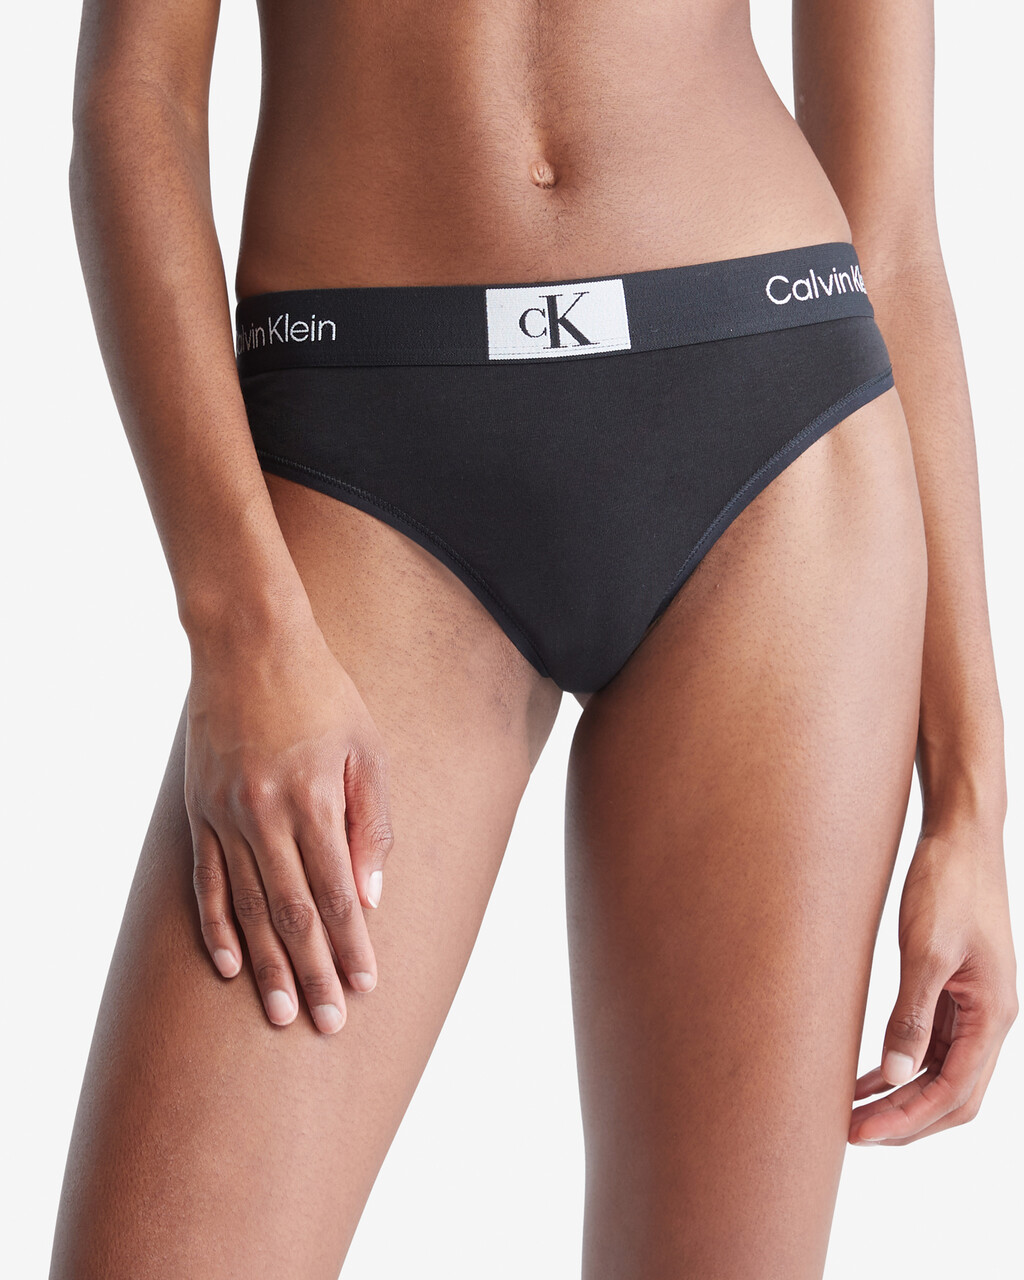 Calvin Klein 1996 Modern Thongs, black